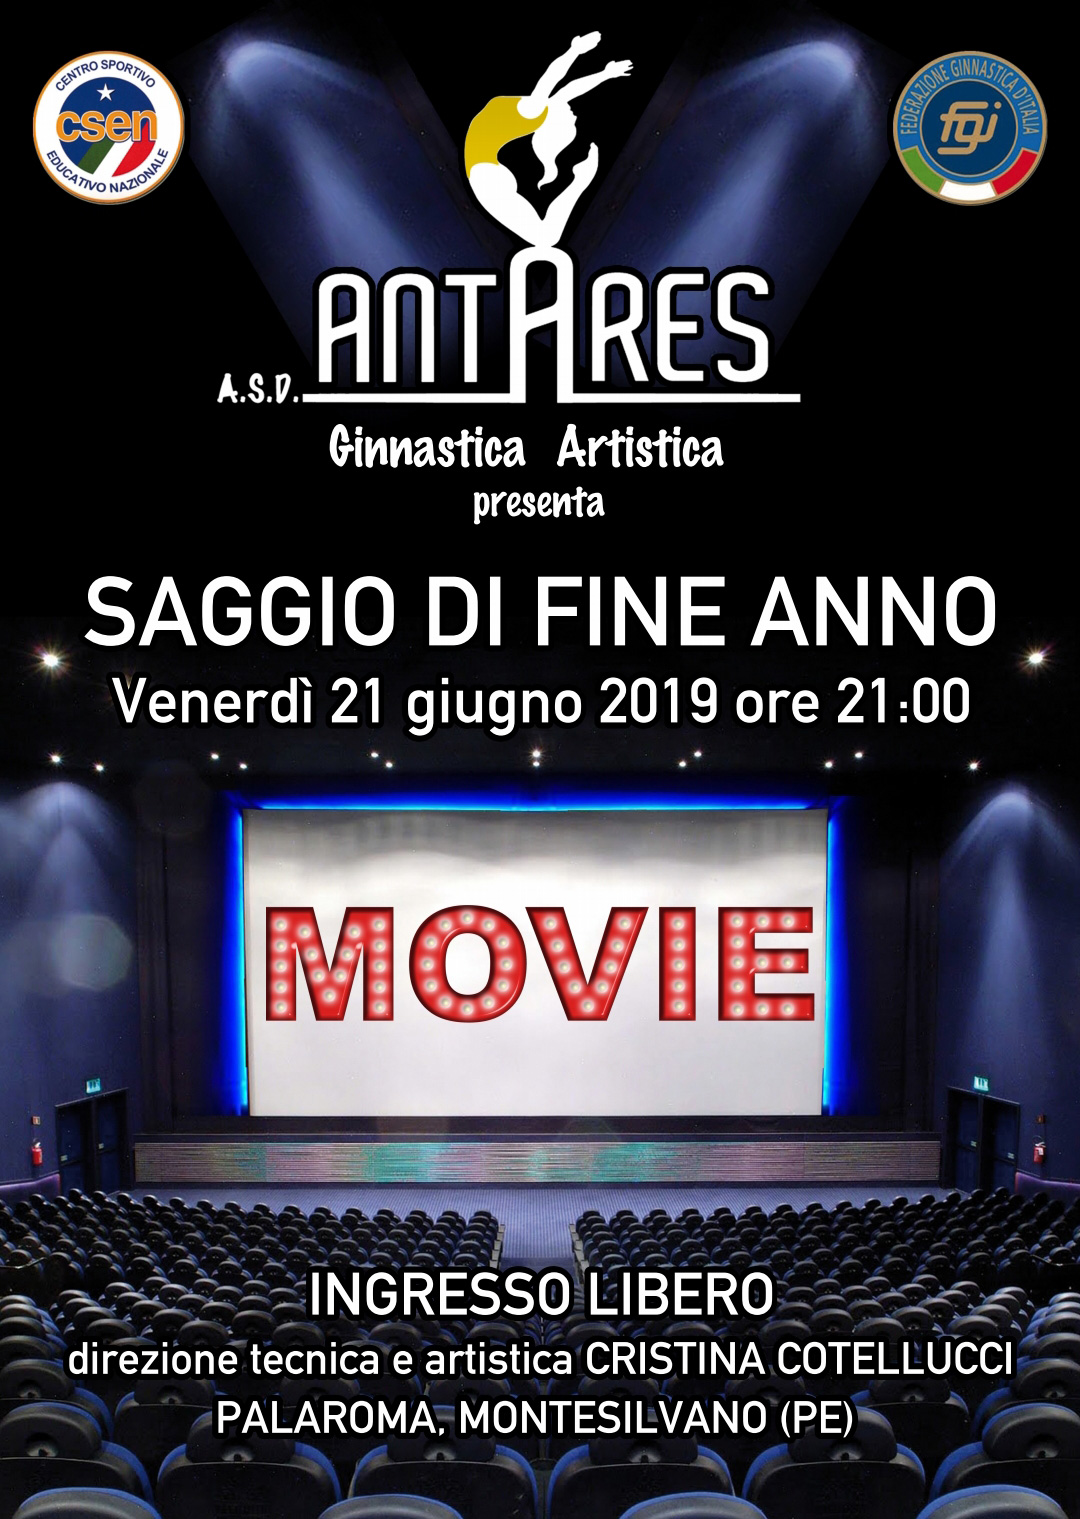 saggio_fine_anno_2019_antares